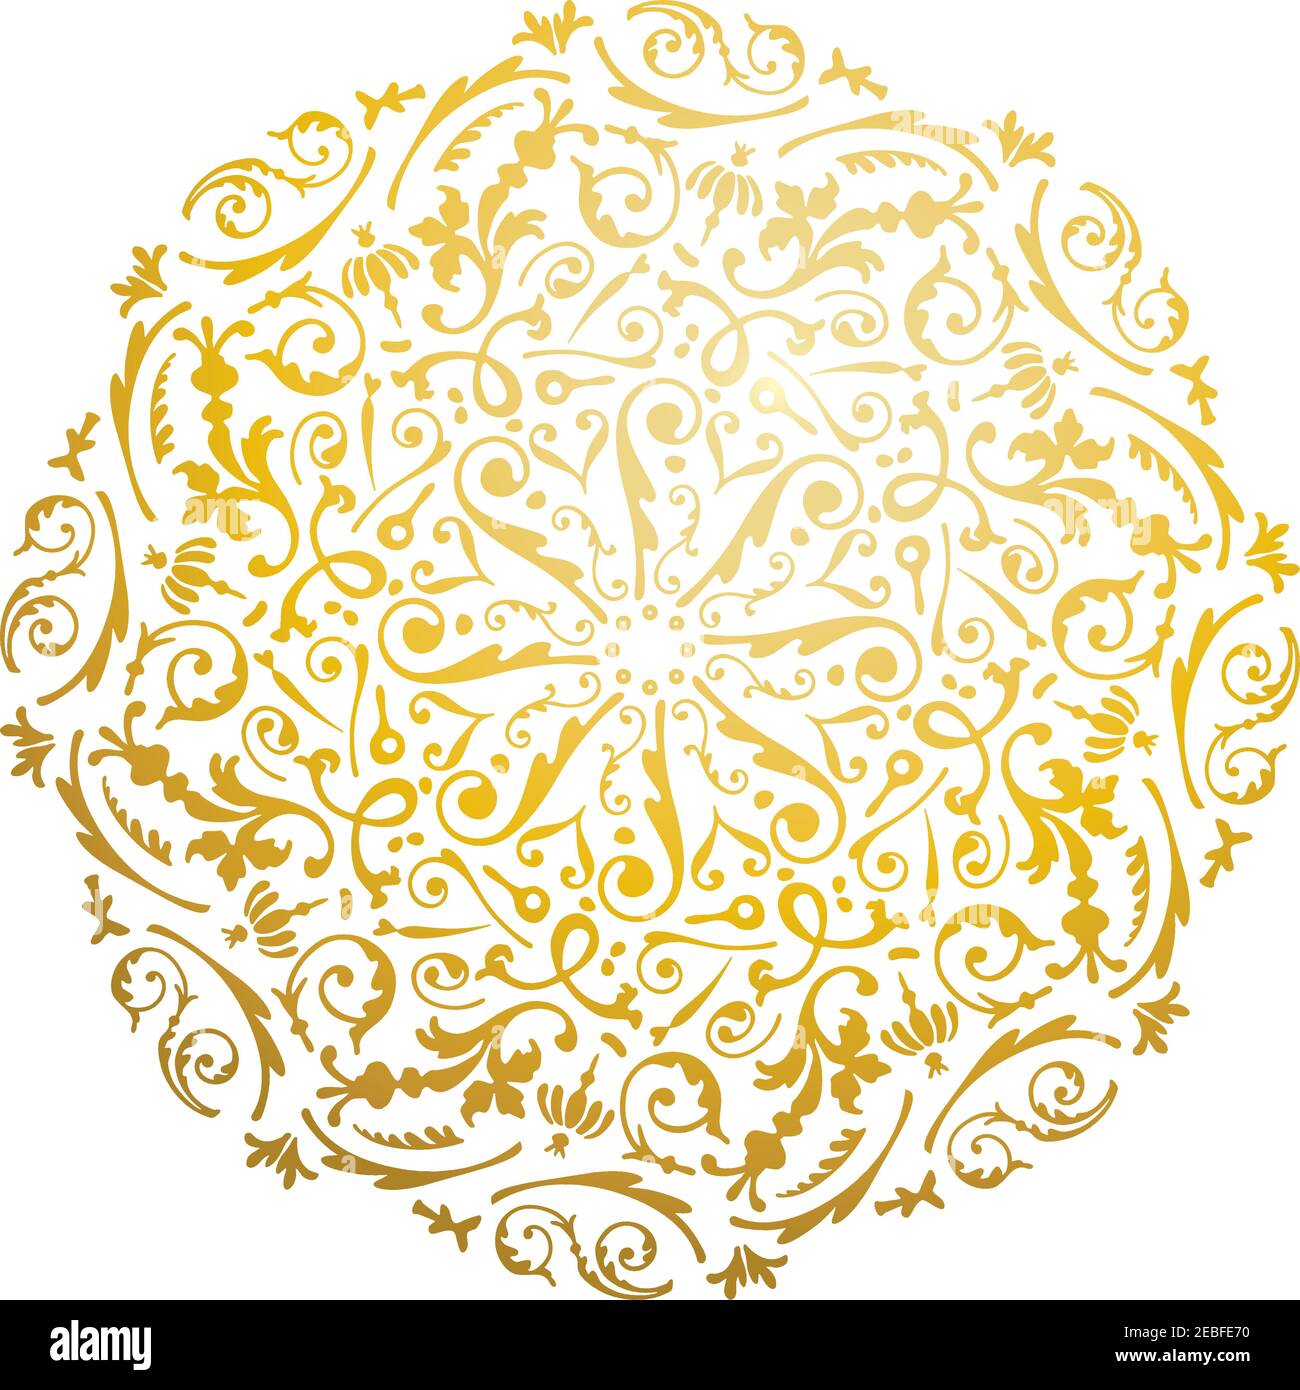 Florales Goldfarbenes Mandala. Modernes und kunstvolles Mandala mit hellem Metallic-Farbton. Geometrisches kreisförmiges Designelement für Einladungskarten und Grußkarten Stock Vektor